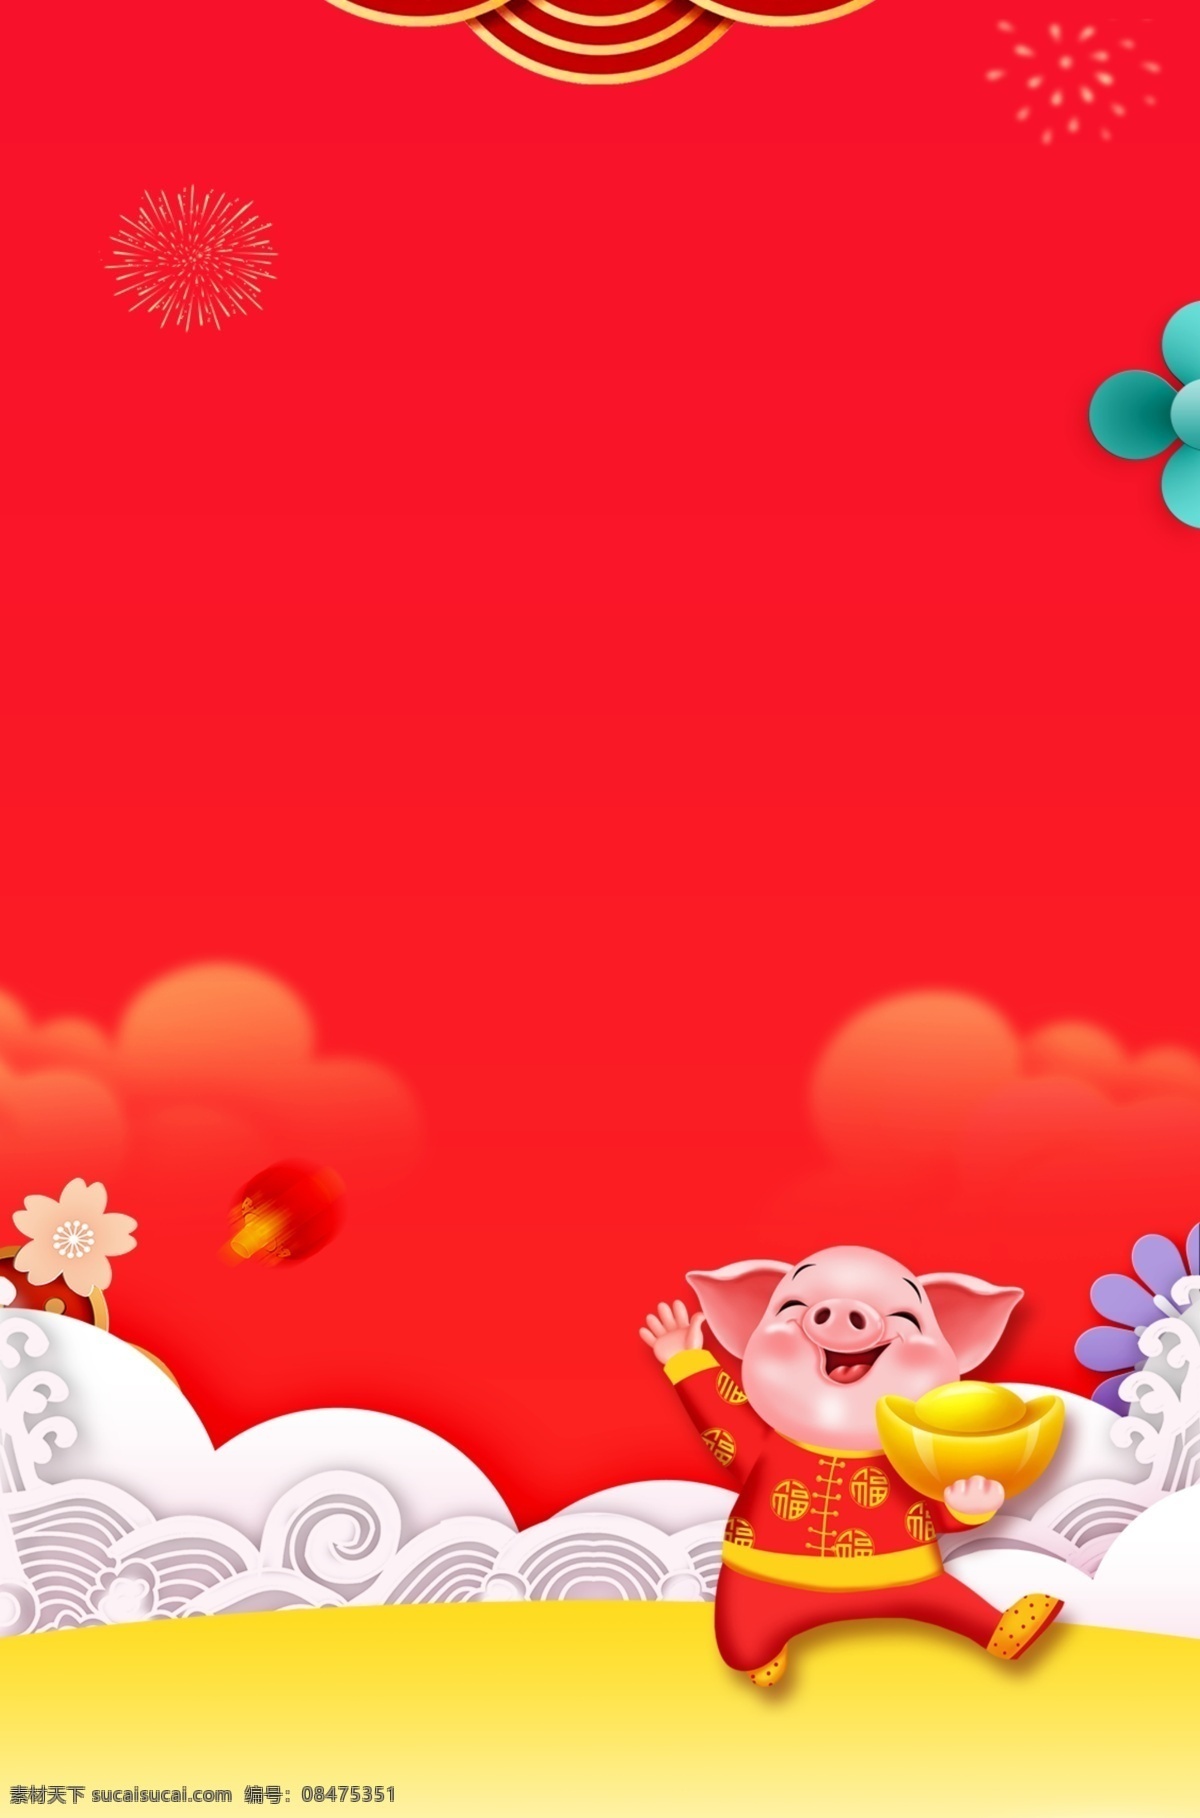 大红色 传统 元旦 背景 红色 喜迎猪年 艺术背景 2019猪年 猪年背景 猪年展板 小猪